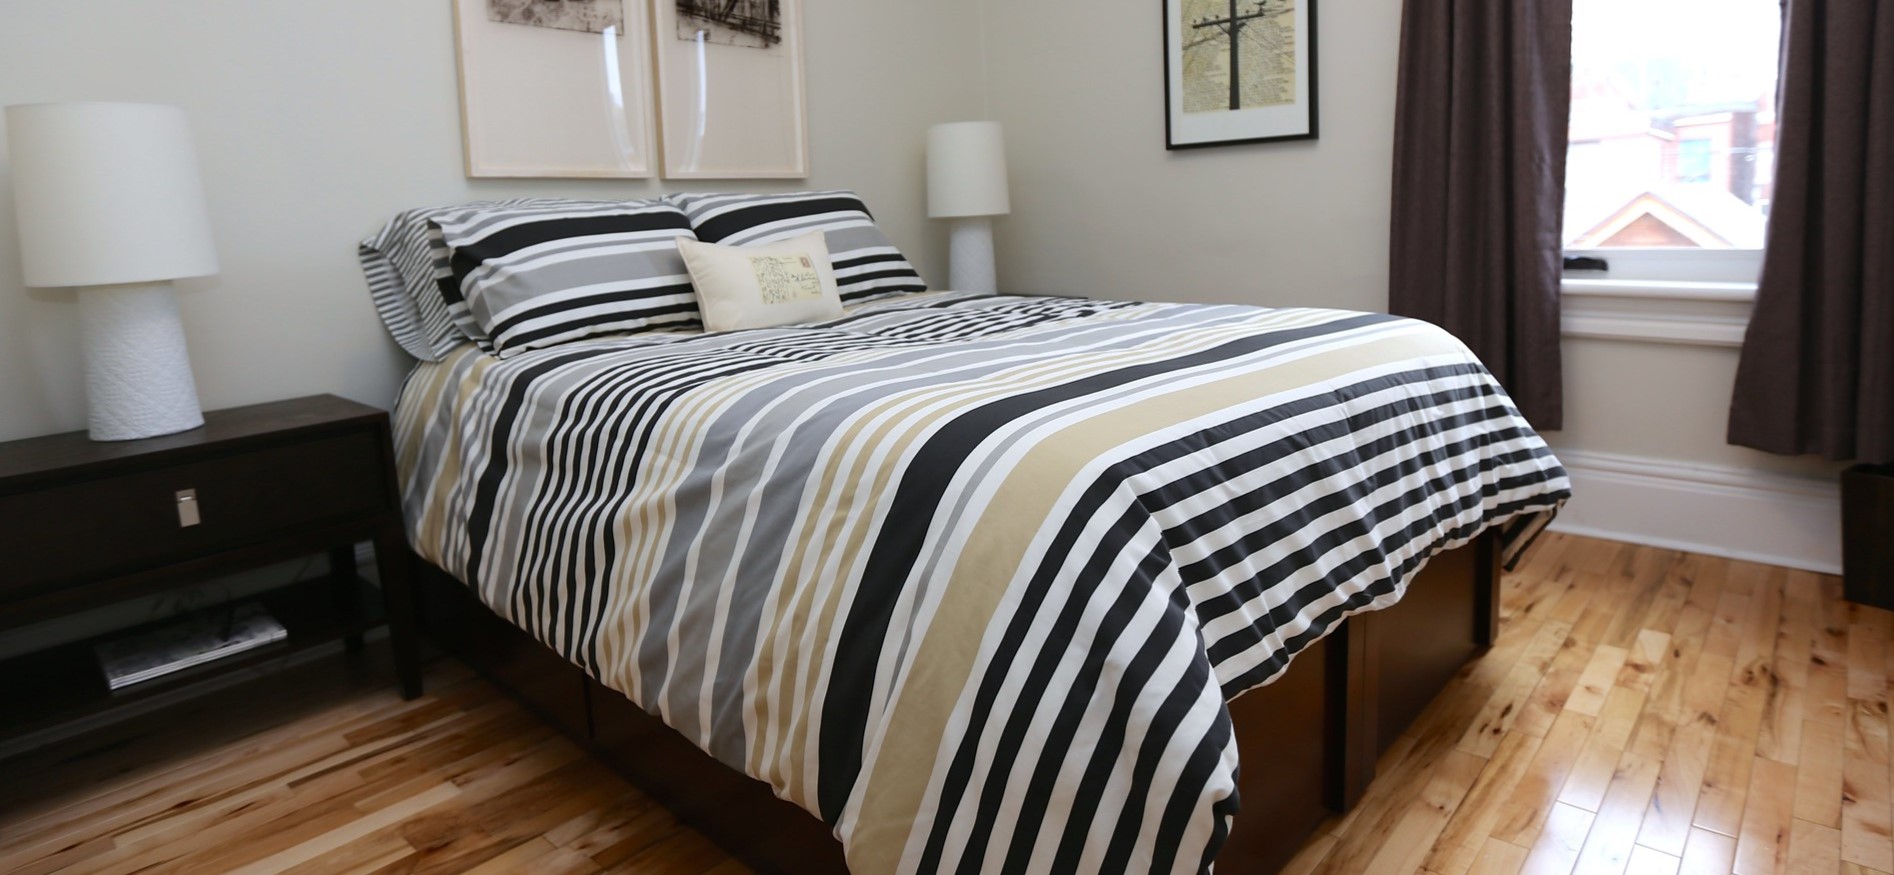 Под цвет кровати можно выбрать две прикроватные тумбочки для спальни